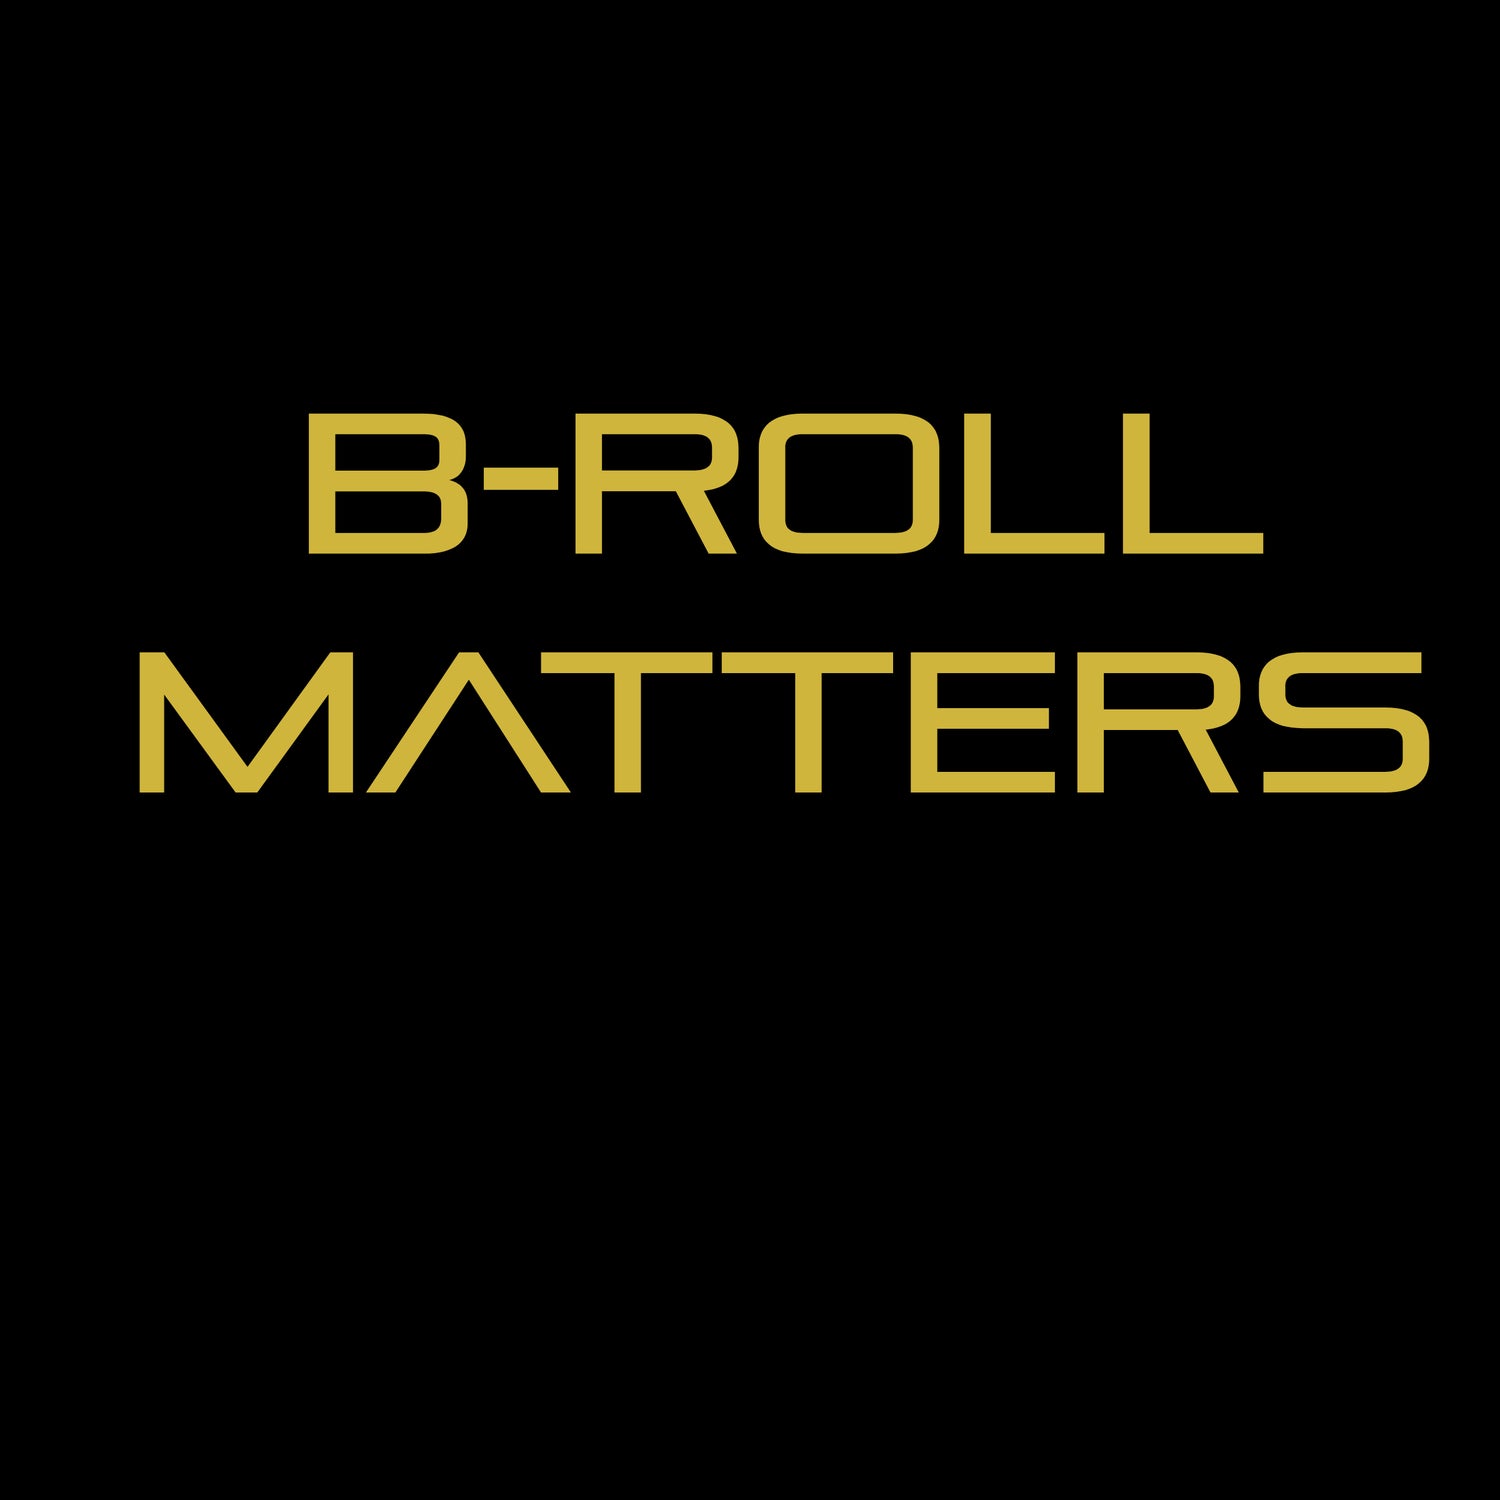 B-Roll Matters Apparel